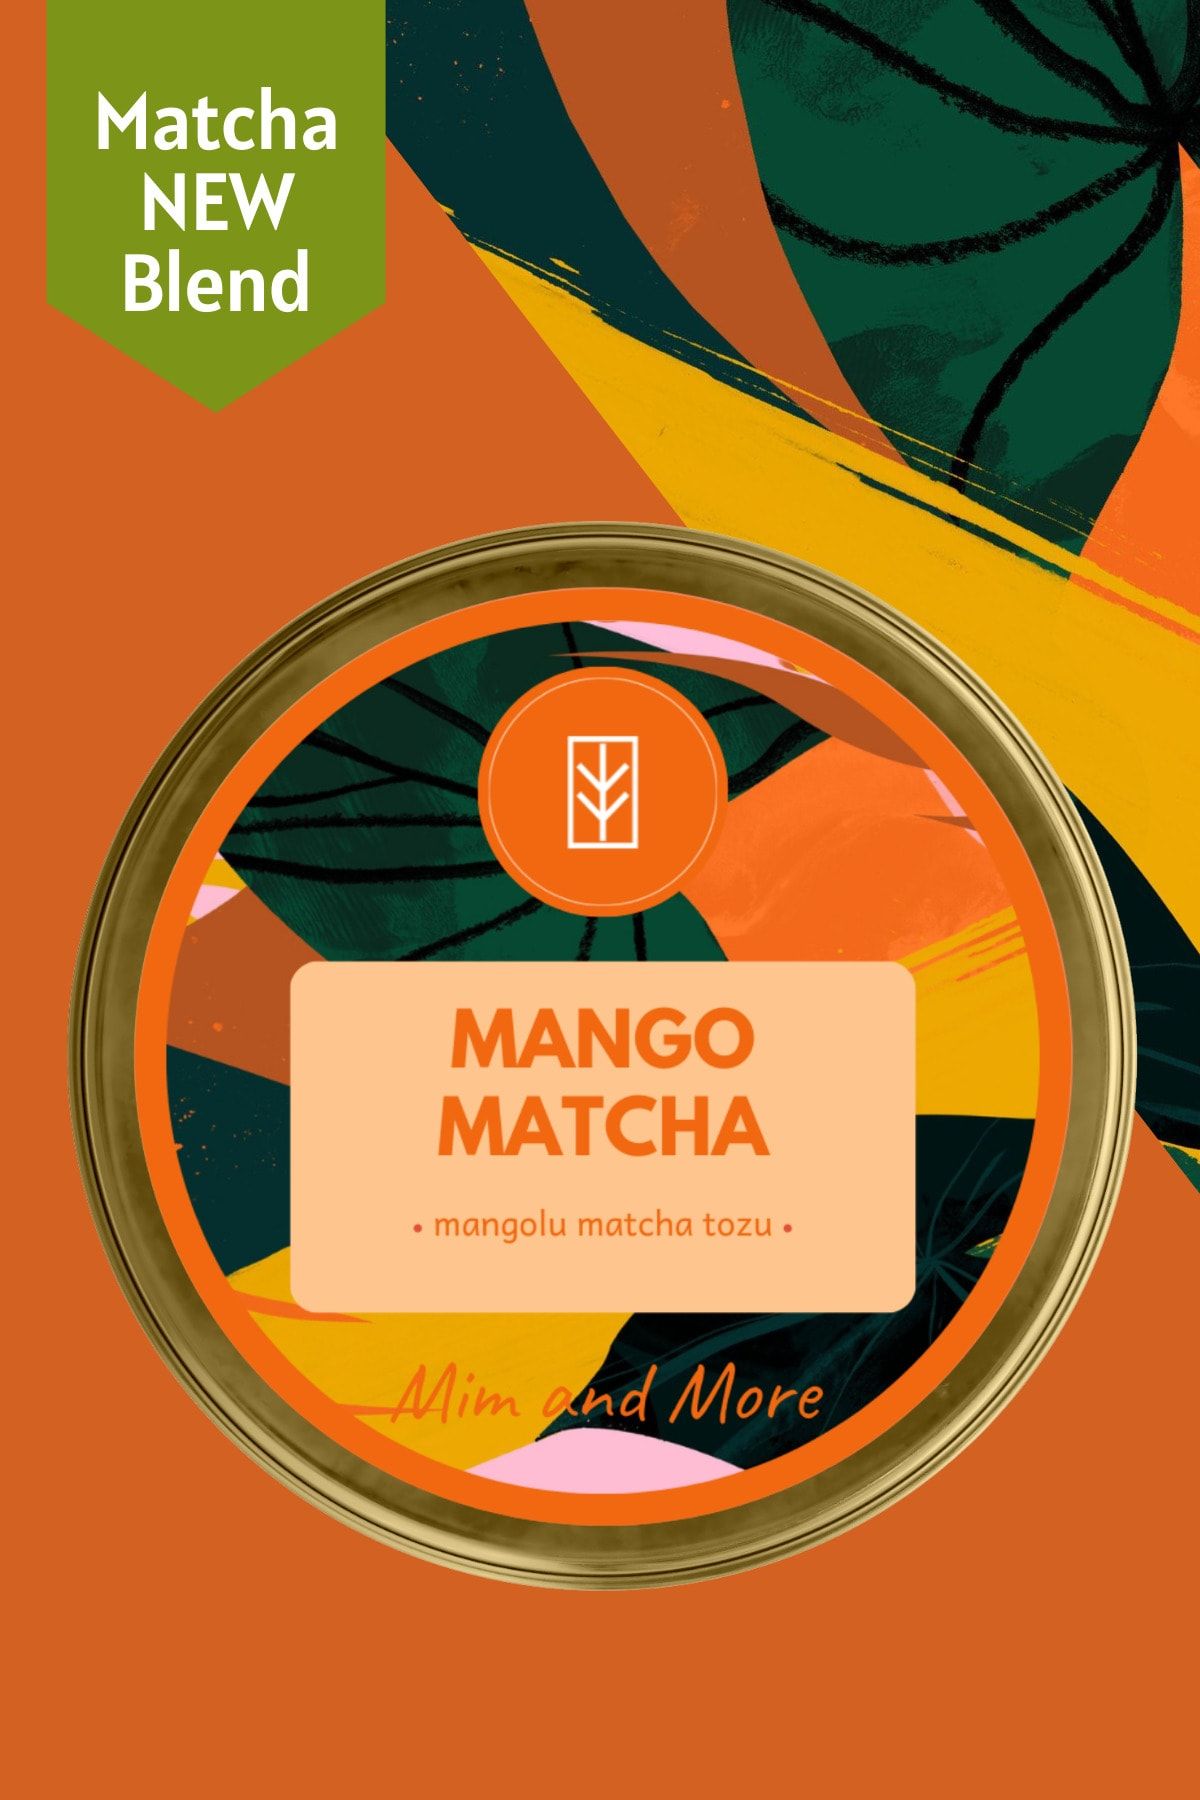 Mim and More Mango Matcha - Mangolu Matcha